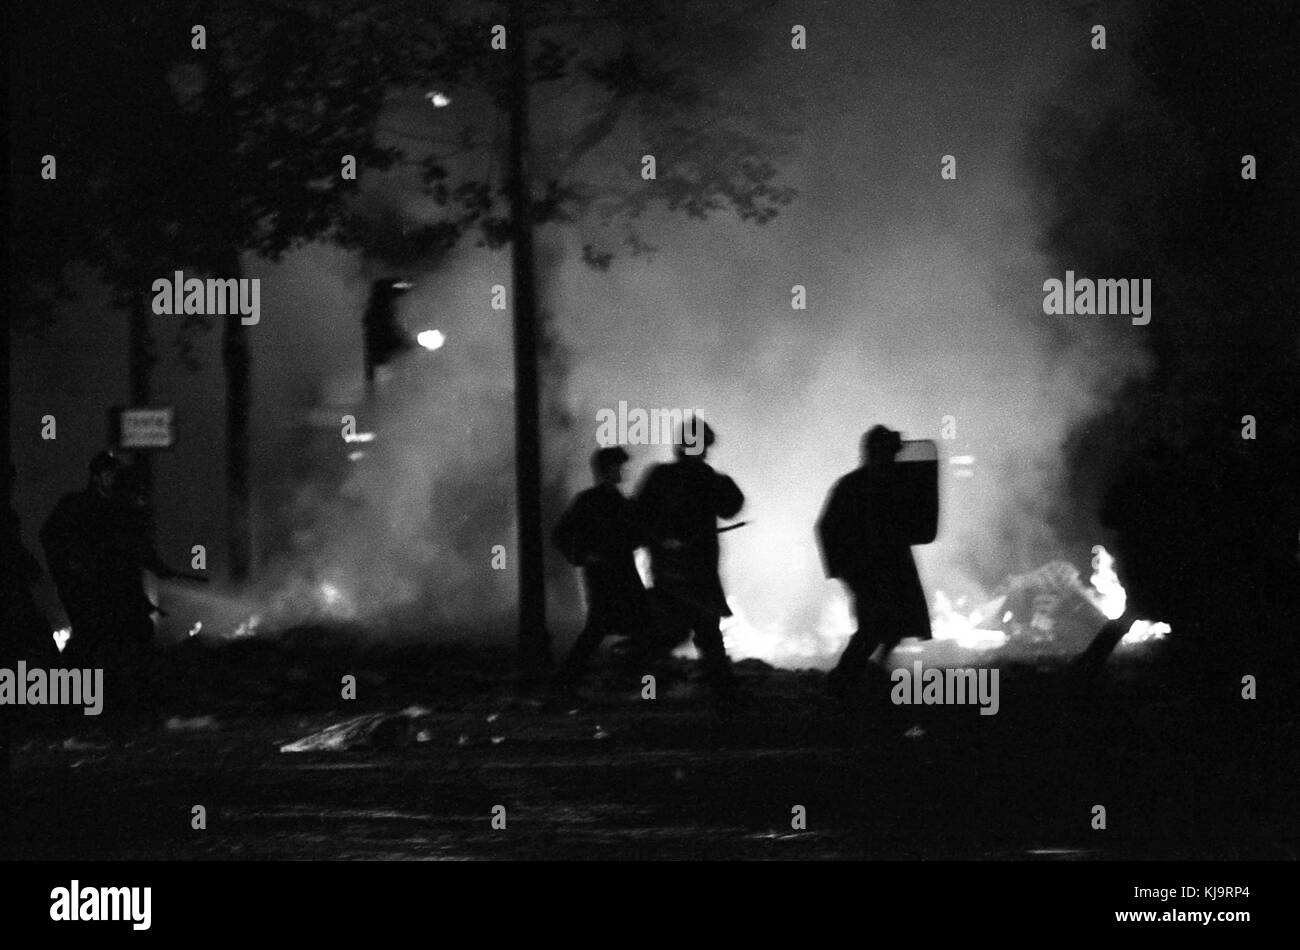 Philippe Gras / Le Pictorium - Mai 1968 - 1968 - France / Ile-de-France (région) / Paris - Les gendarmes en face d'une rue d'incendie. Banque D'Images